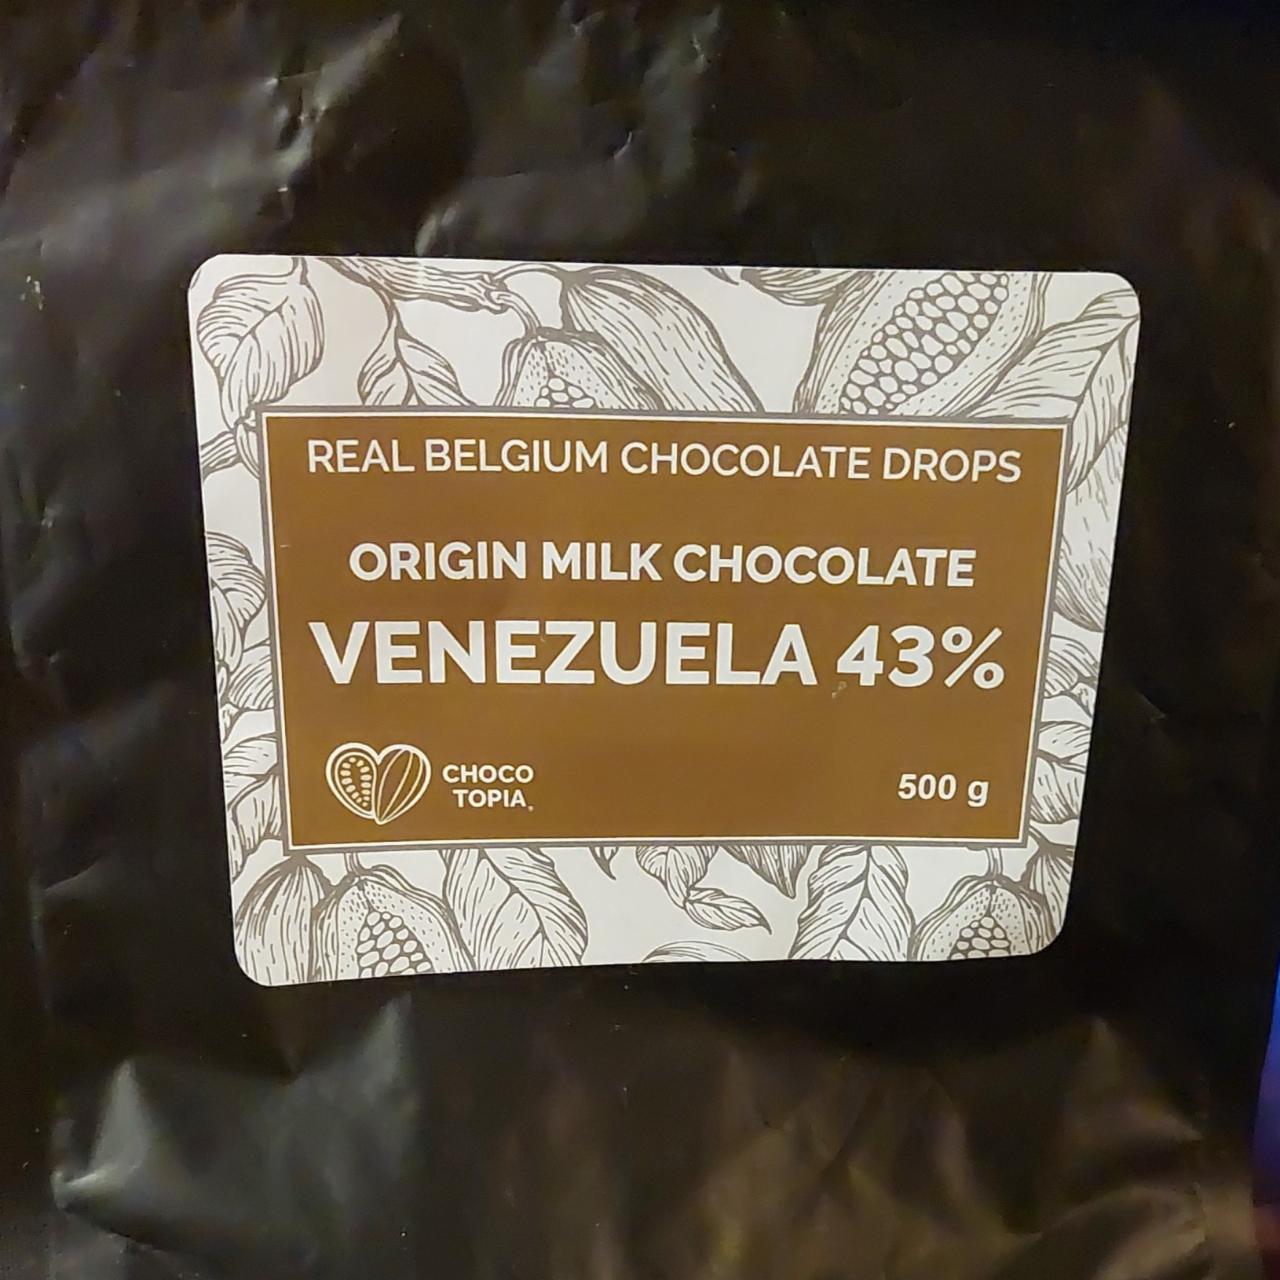 Fotografie - Origin milk chocolate Venezuela 43% Chocotopia